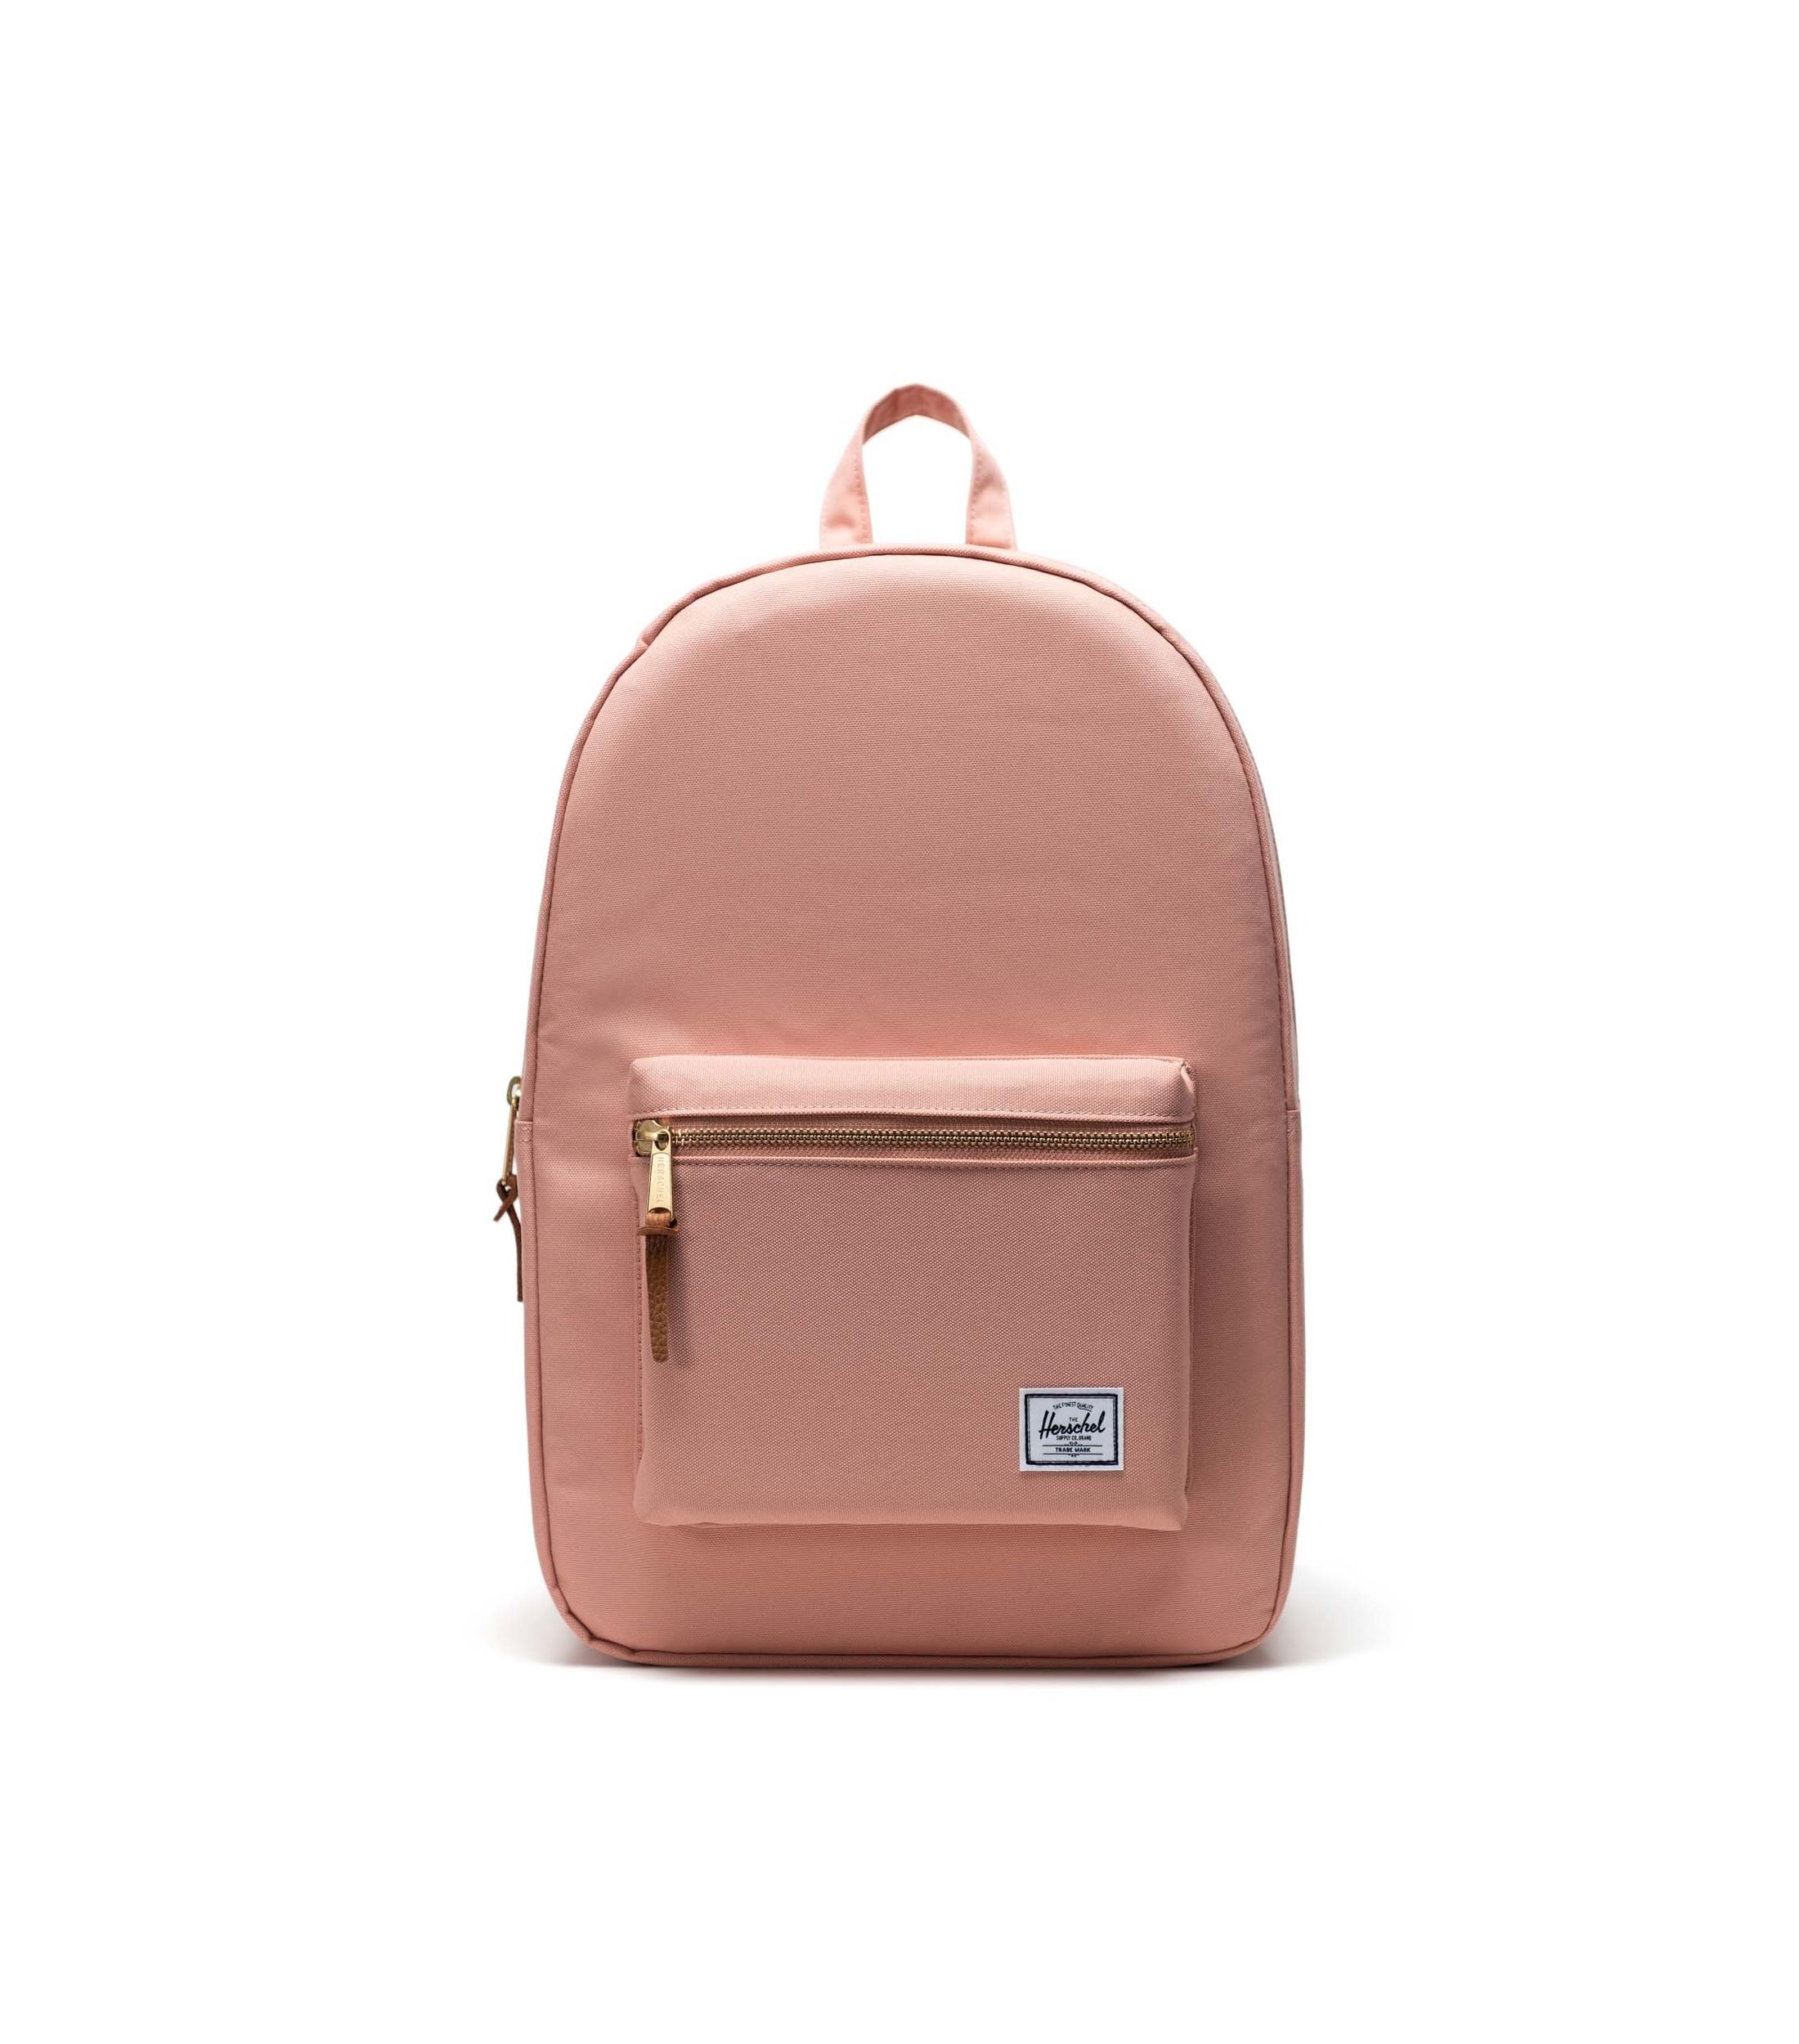 Рюкзак Herschel для женщин, розовый, OS, EUR, 10005-05635-OS